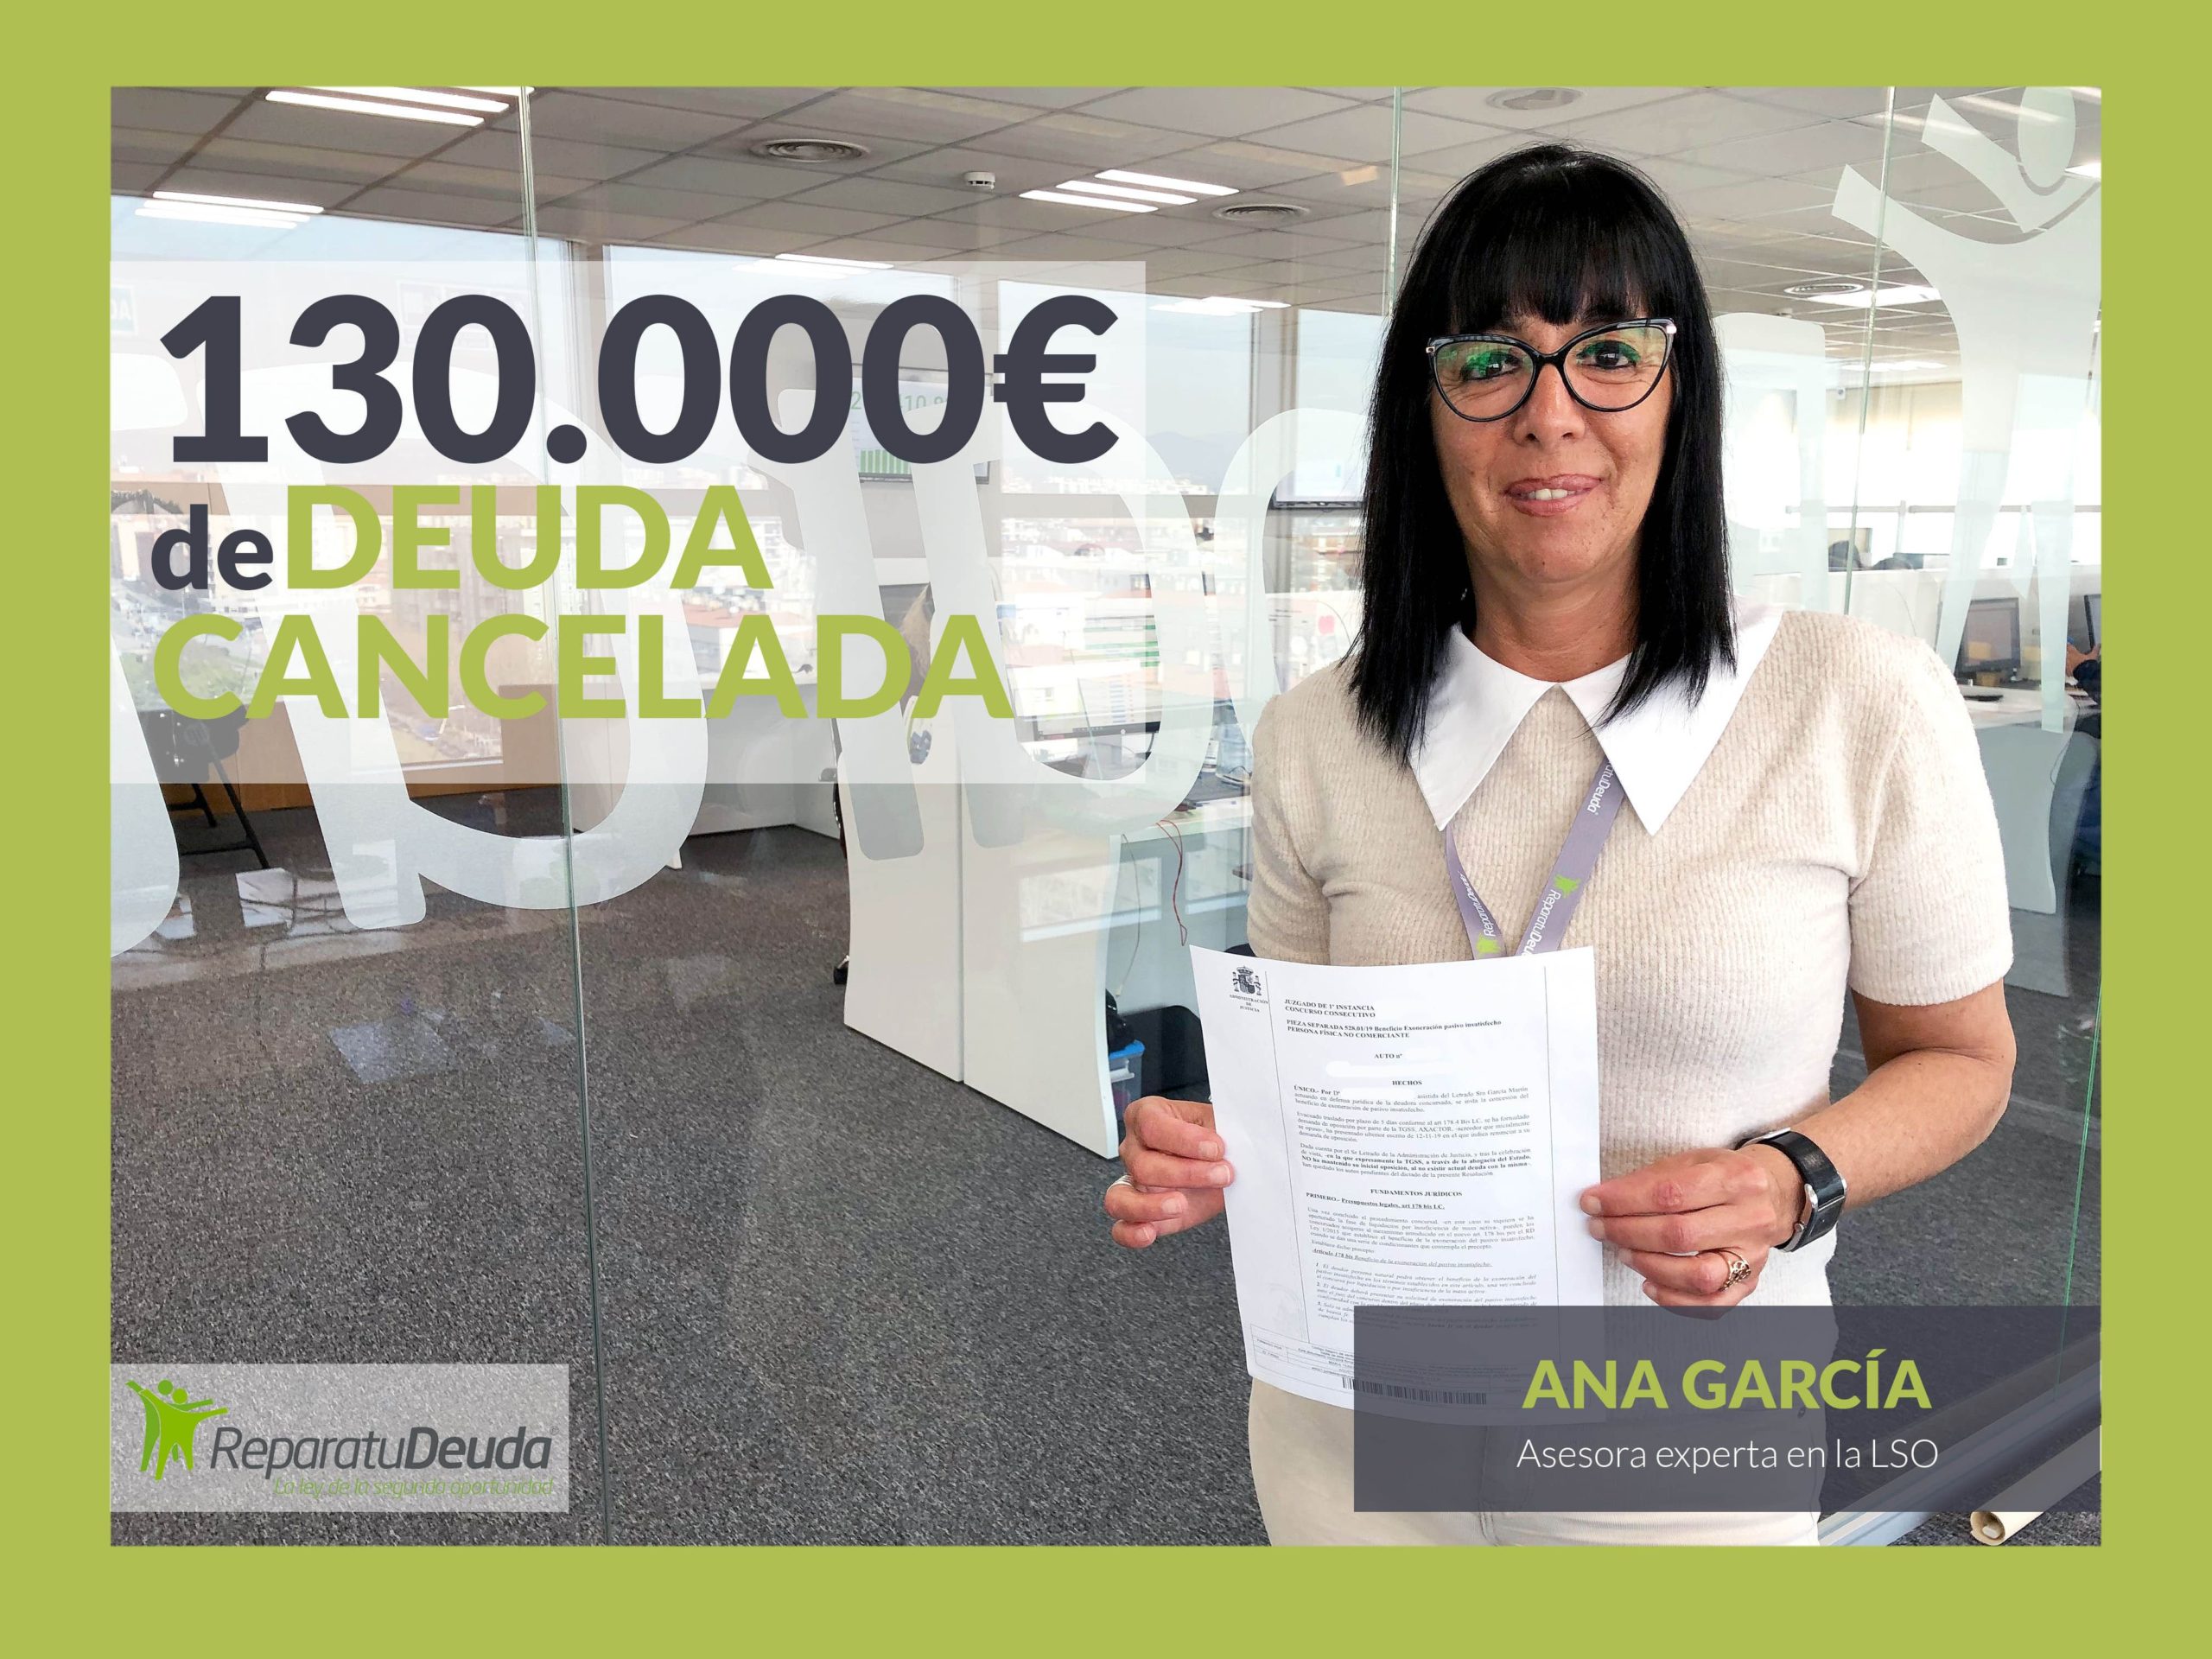 Repara tu deuda Abogados cancela 64.712 eur en Oviedo gracias a la Ley de la Segunda Oportunidad